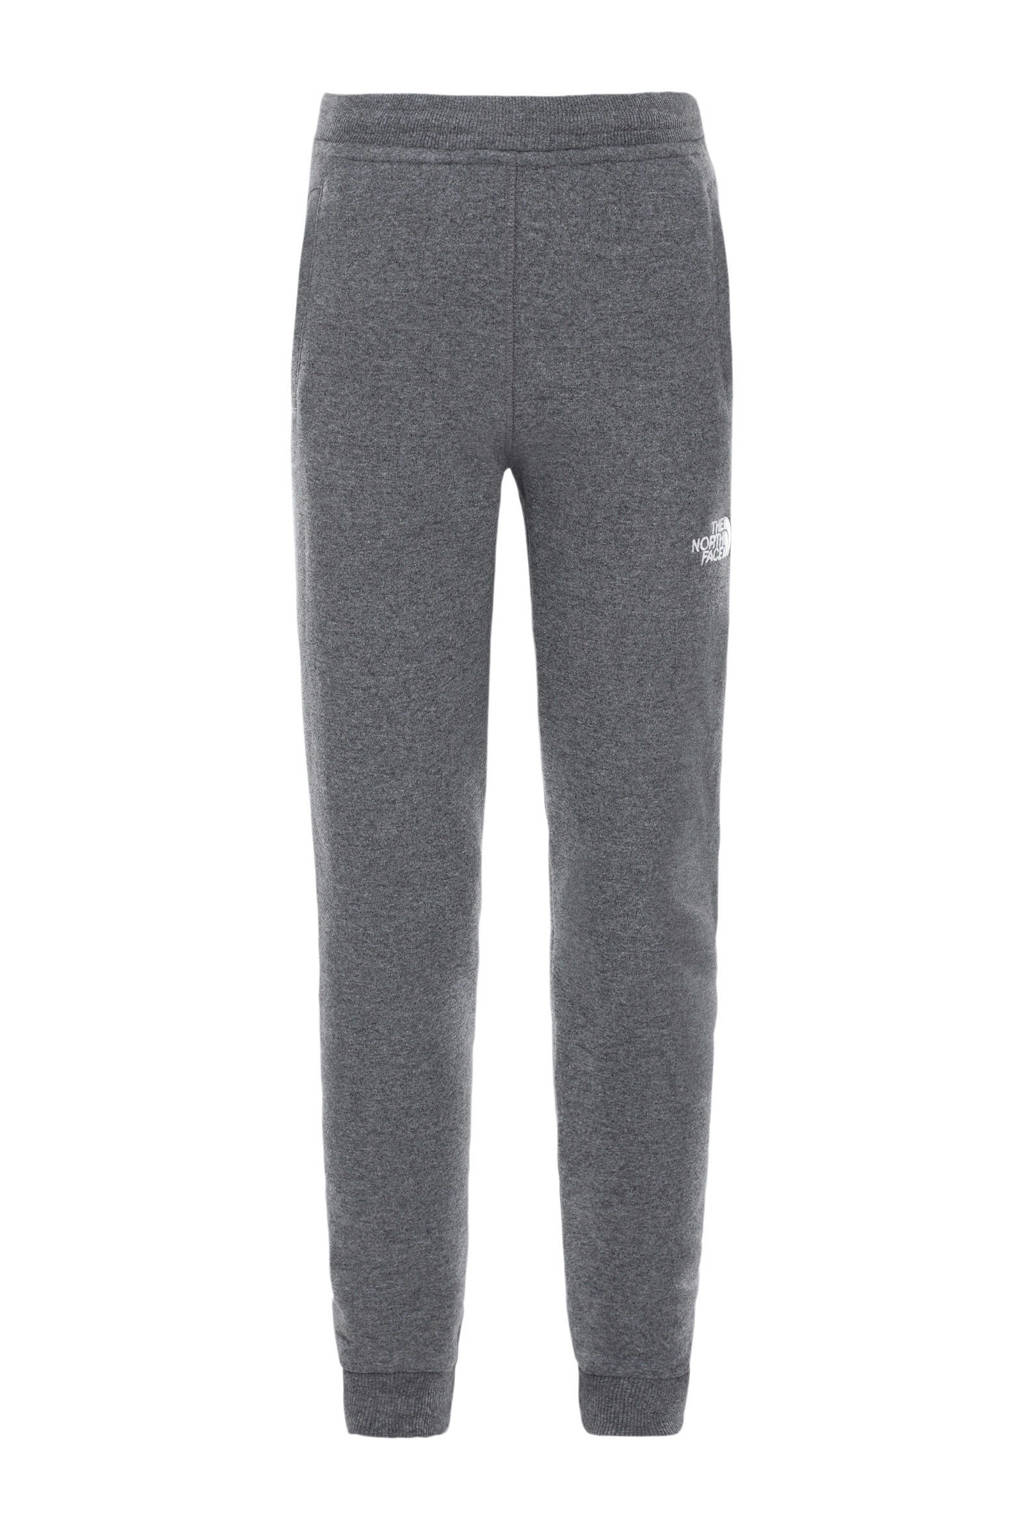 The North Face regular fit joggingbroek Fleece Pant met logo grijs melange, Grijs melange